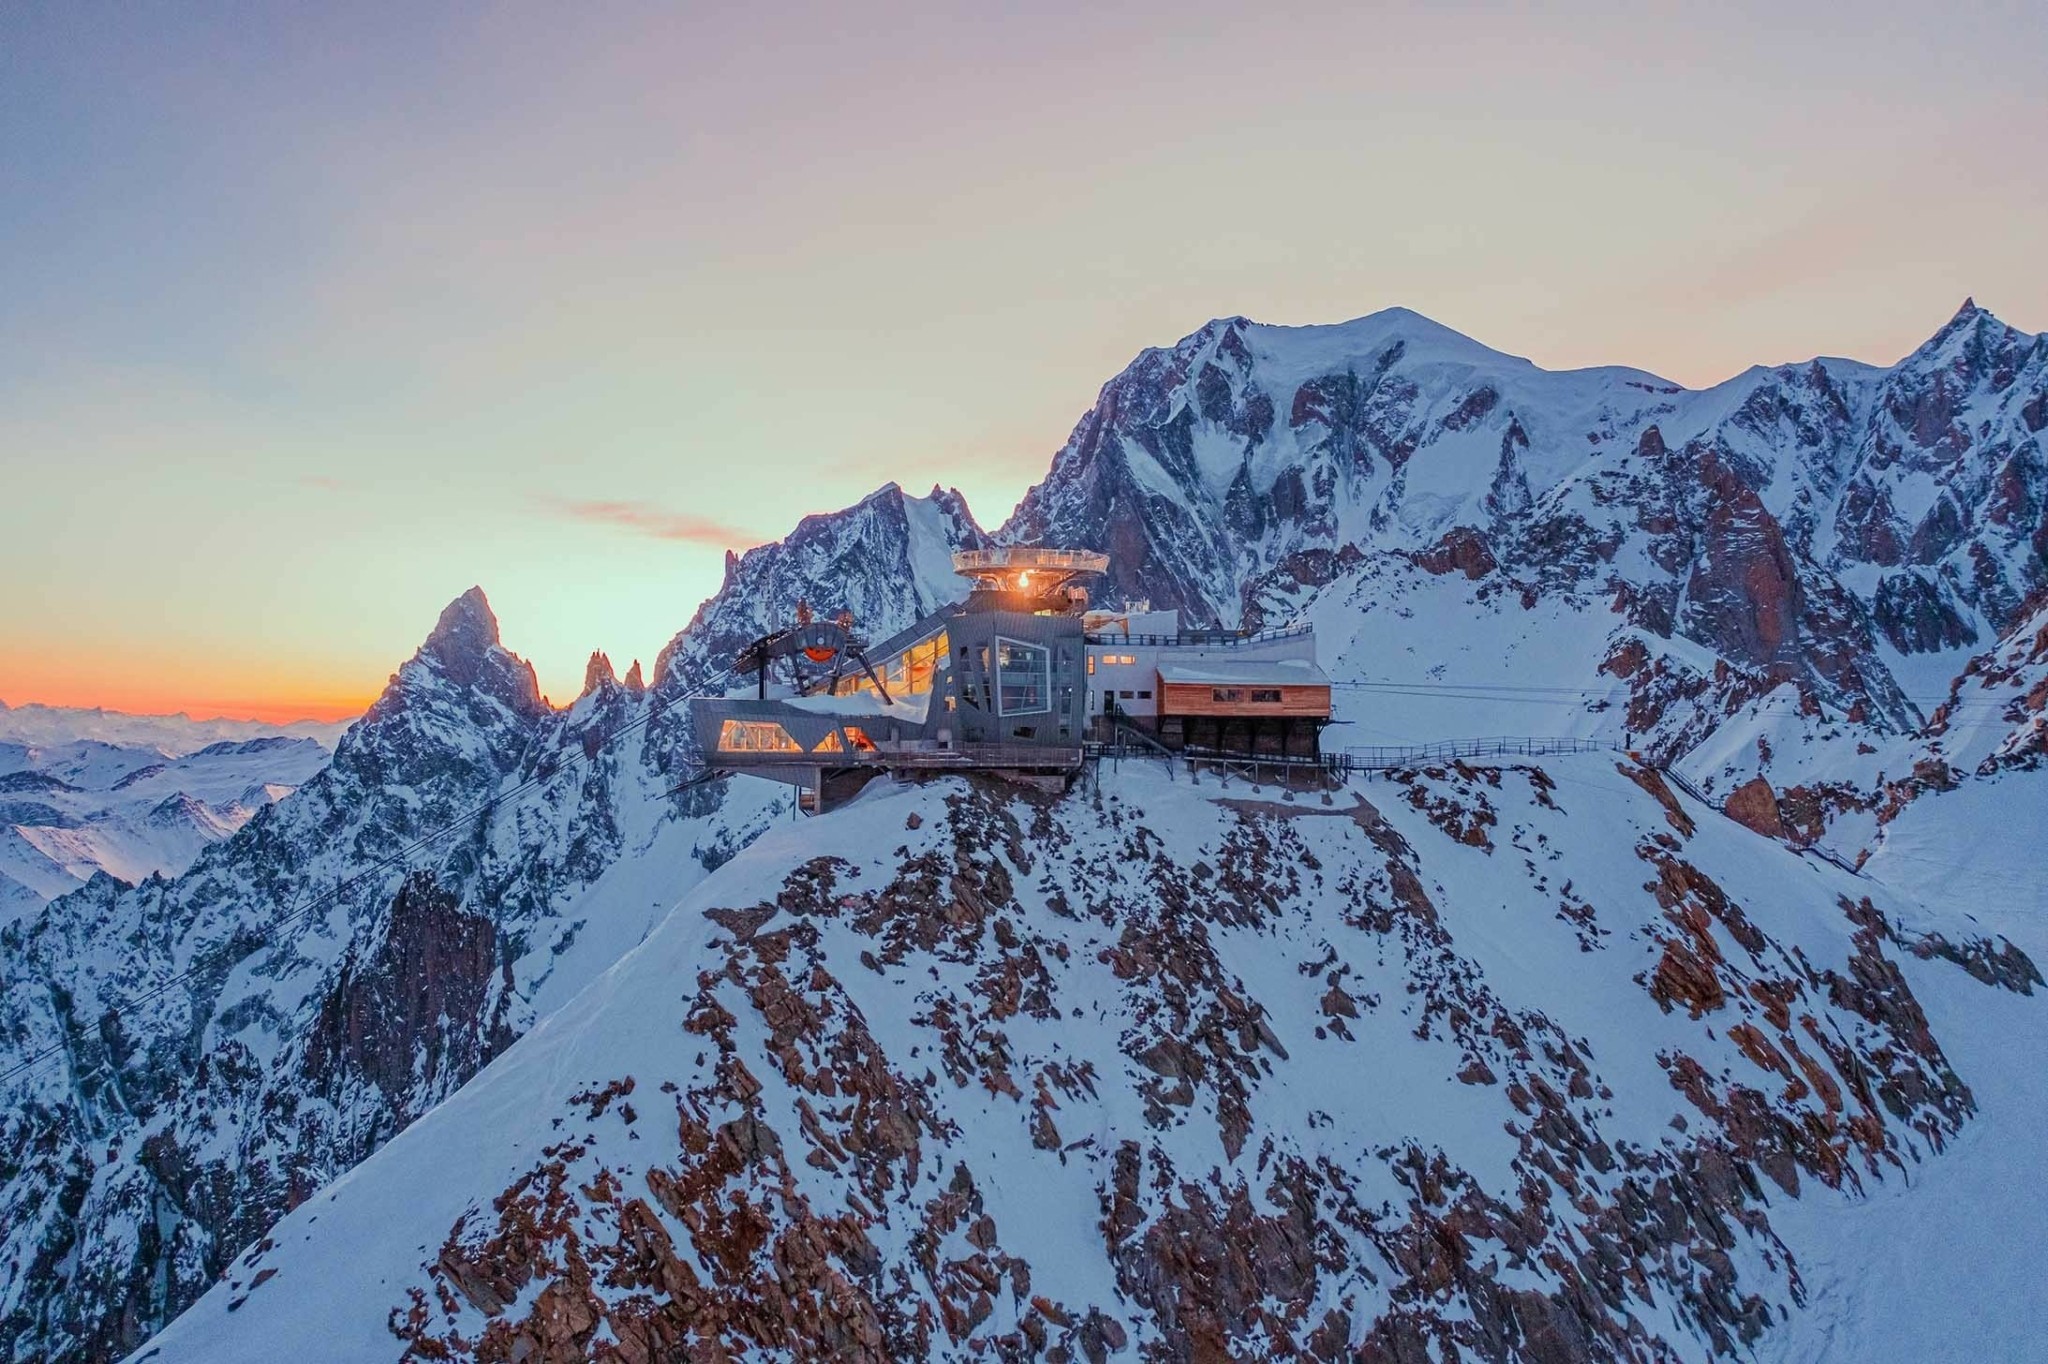 Τα καλύτερα ski resorts της Ευρώπης. Κρυμμένα διαμάντια των Αλπεων και απέραντες πίστες